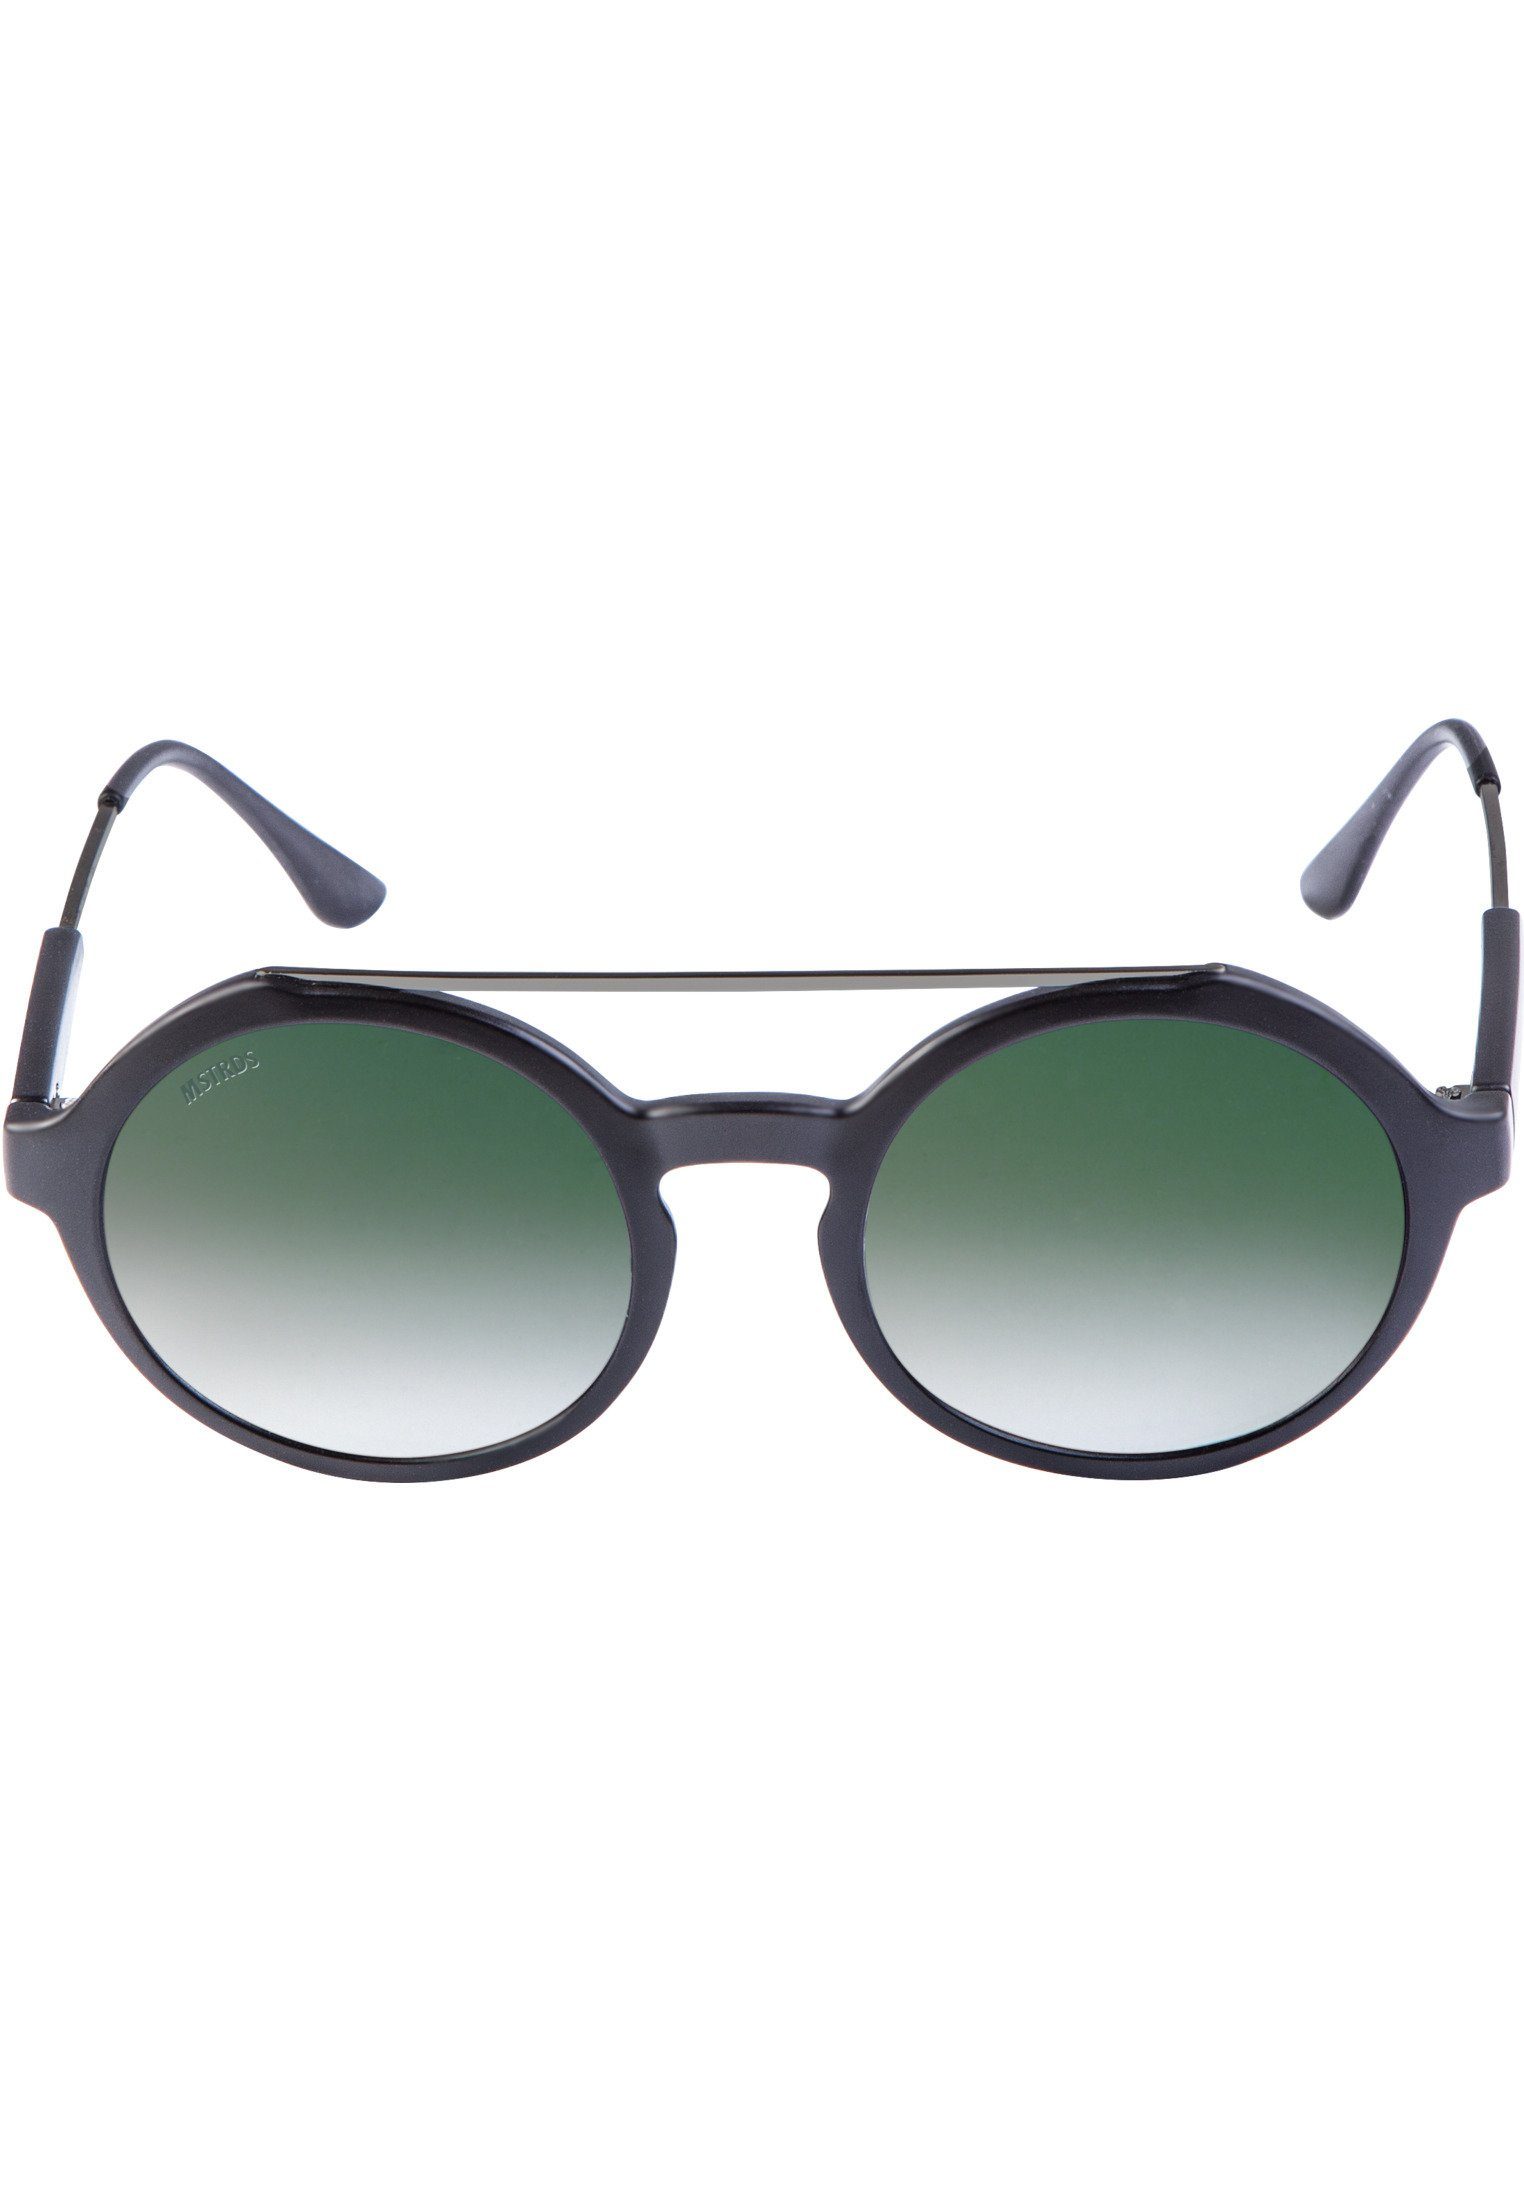 Accessoires MSTRDS Sonnenbrille Sunglasses Space Retro blk/grn